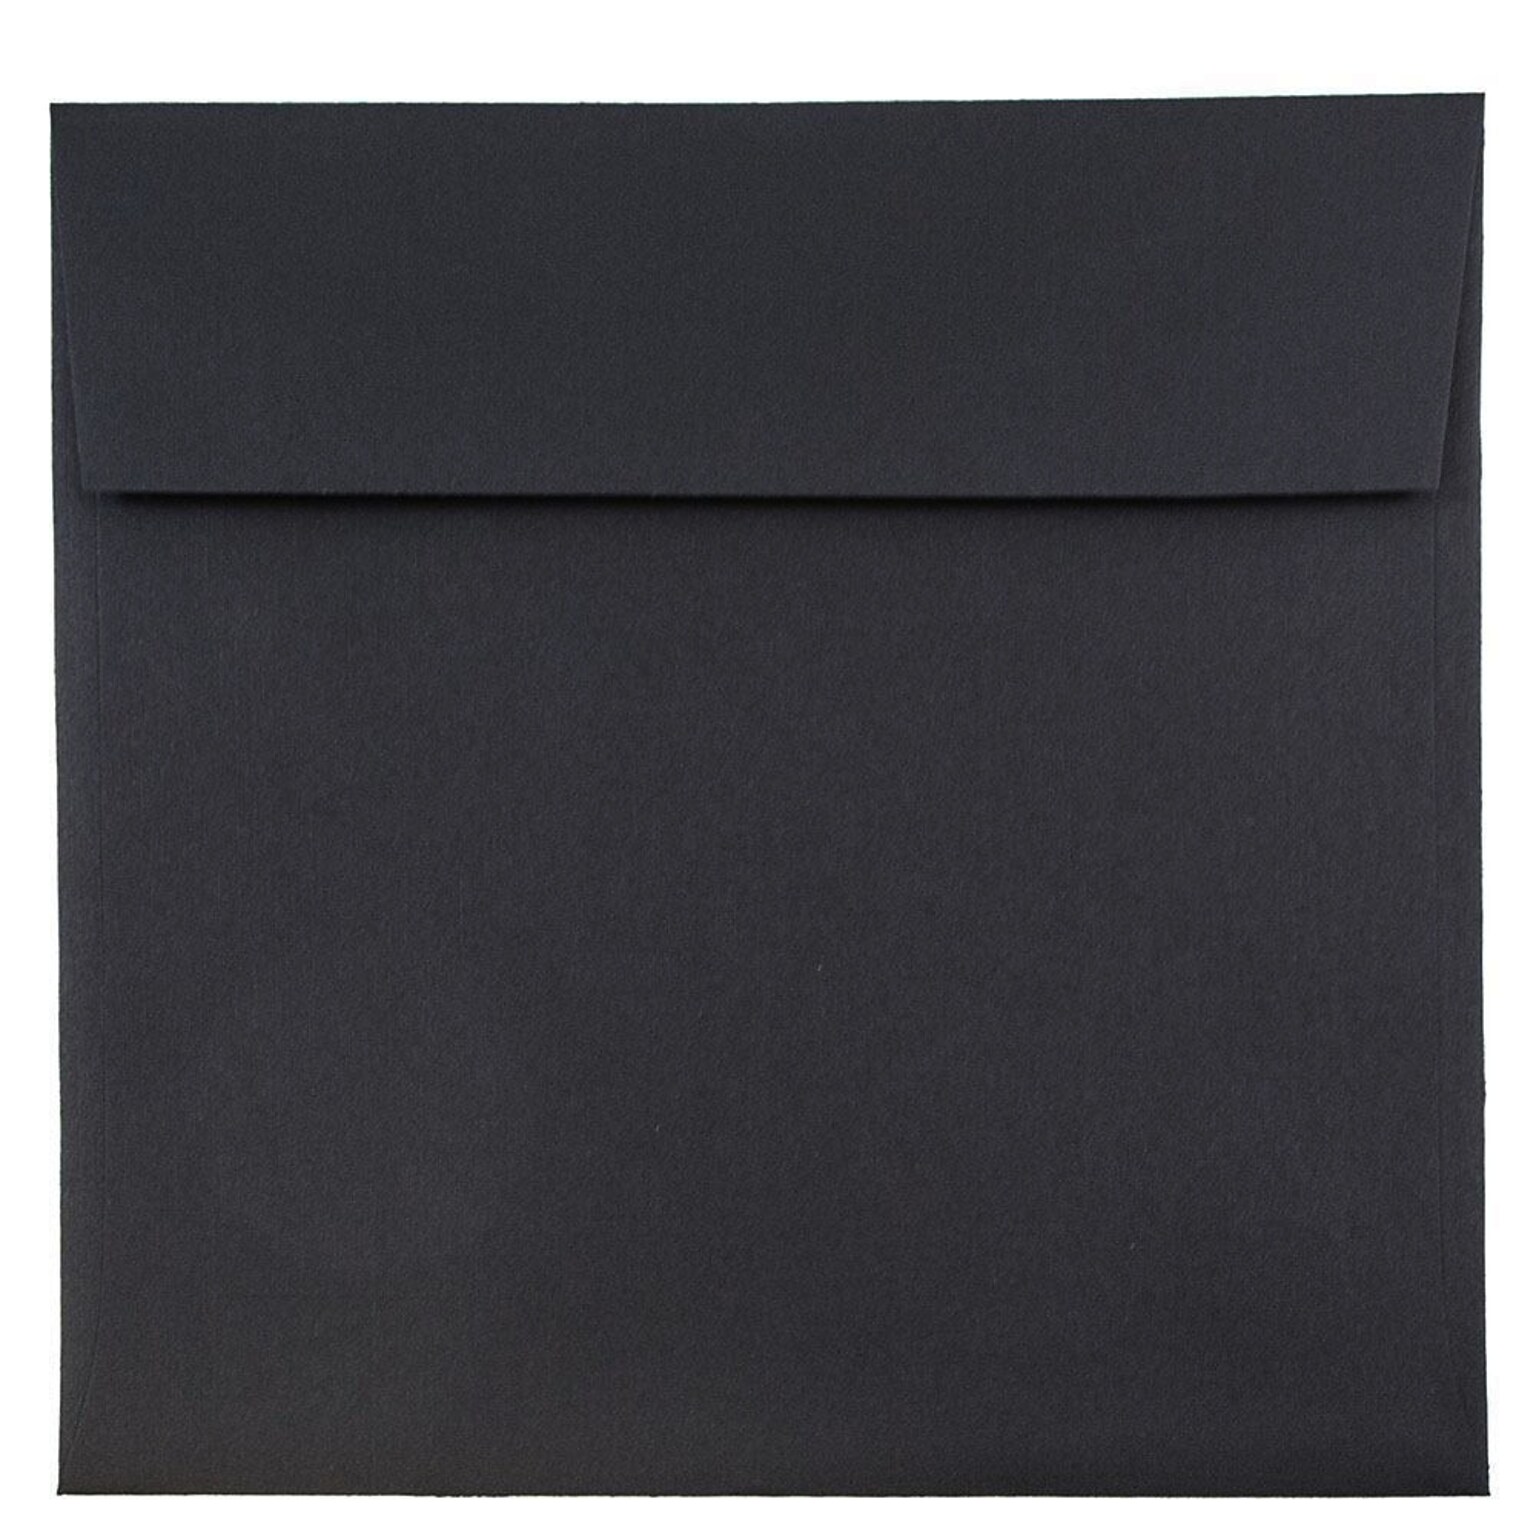 JAM Paper 8.5 x 8.5 Square Invitation Envelopes, Black Linen, 50/Pack (V01214I)